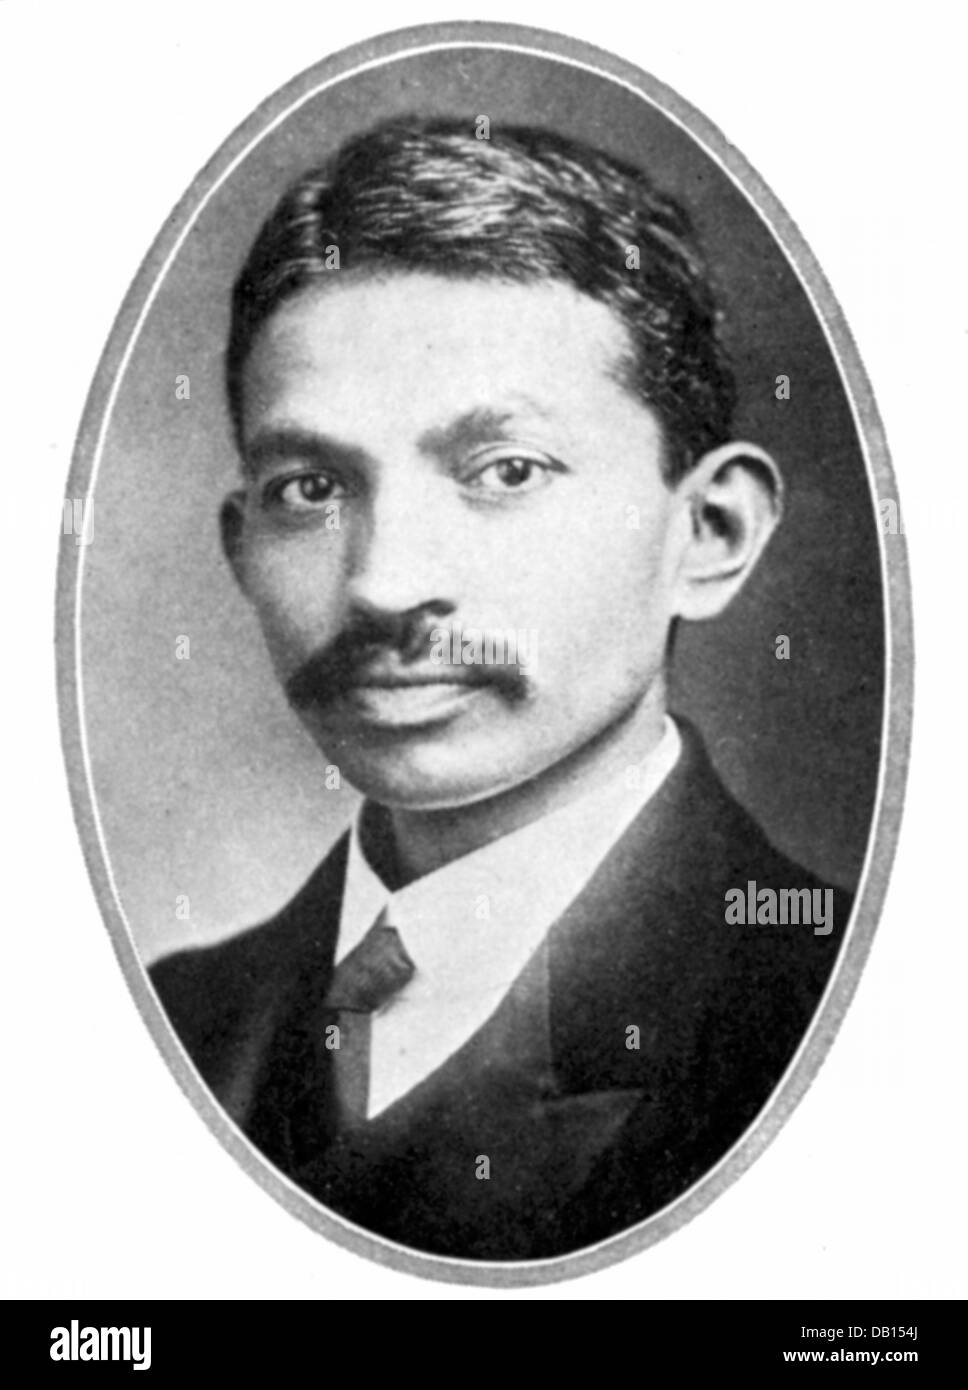 Mohondas Karamchand Gandhi (jeune) , connu sous le nom de Mahatma - leader nationaliste indien Banque D'Images